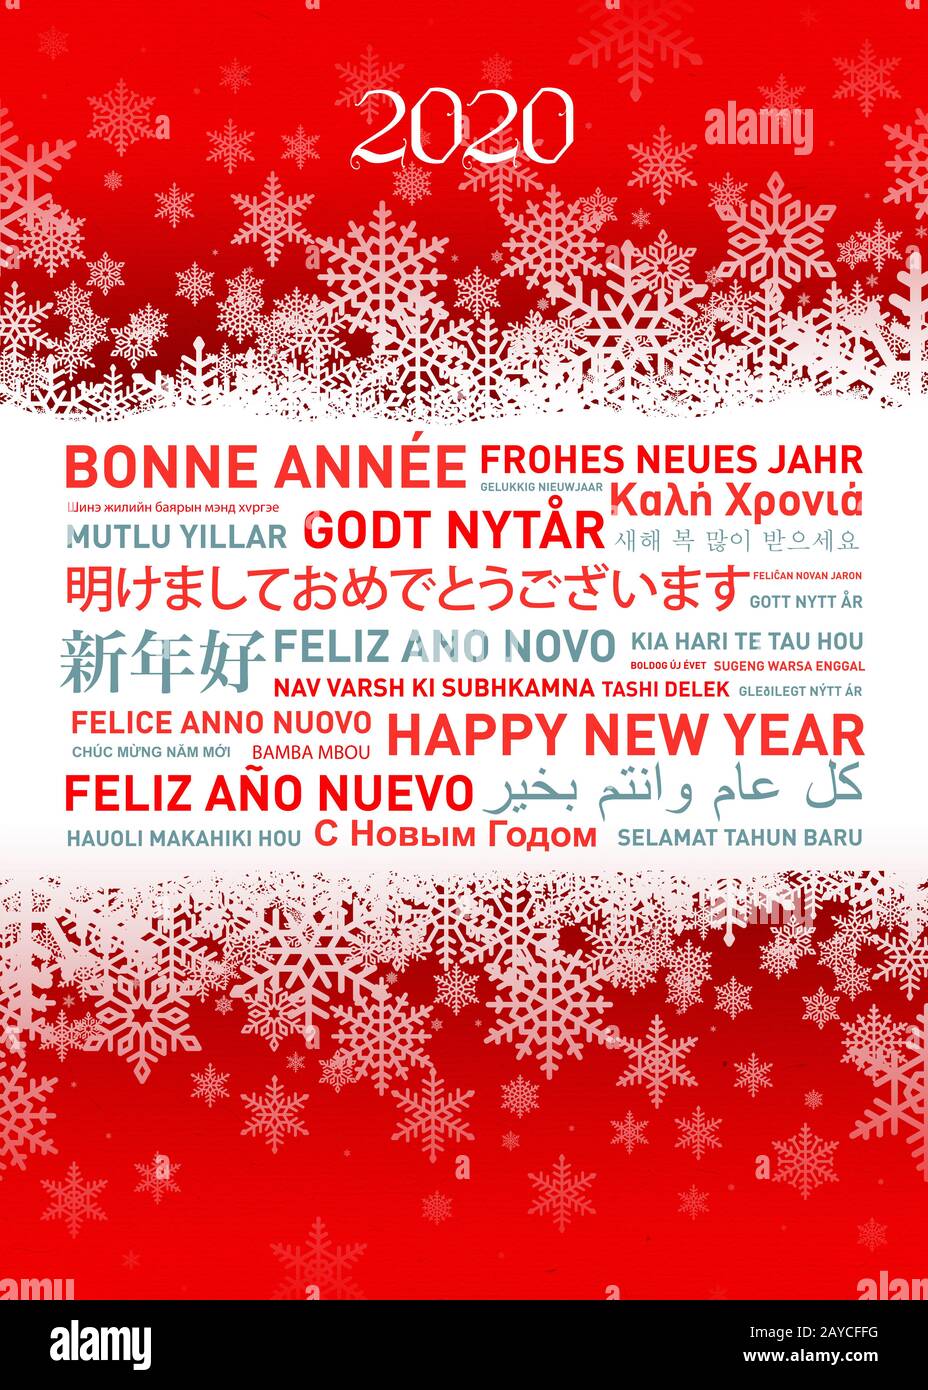 Felice anno nuovo card da tutto il mondo Foto Stock